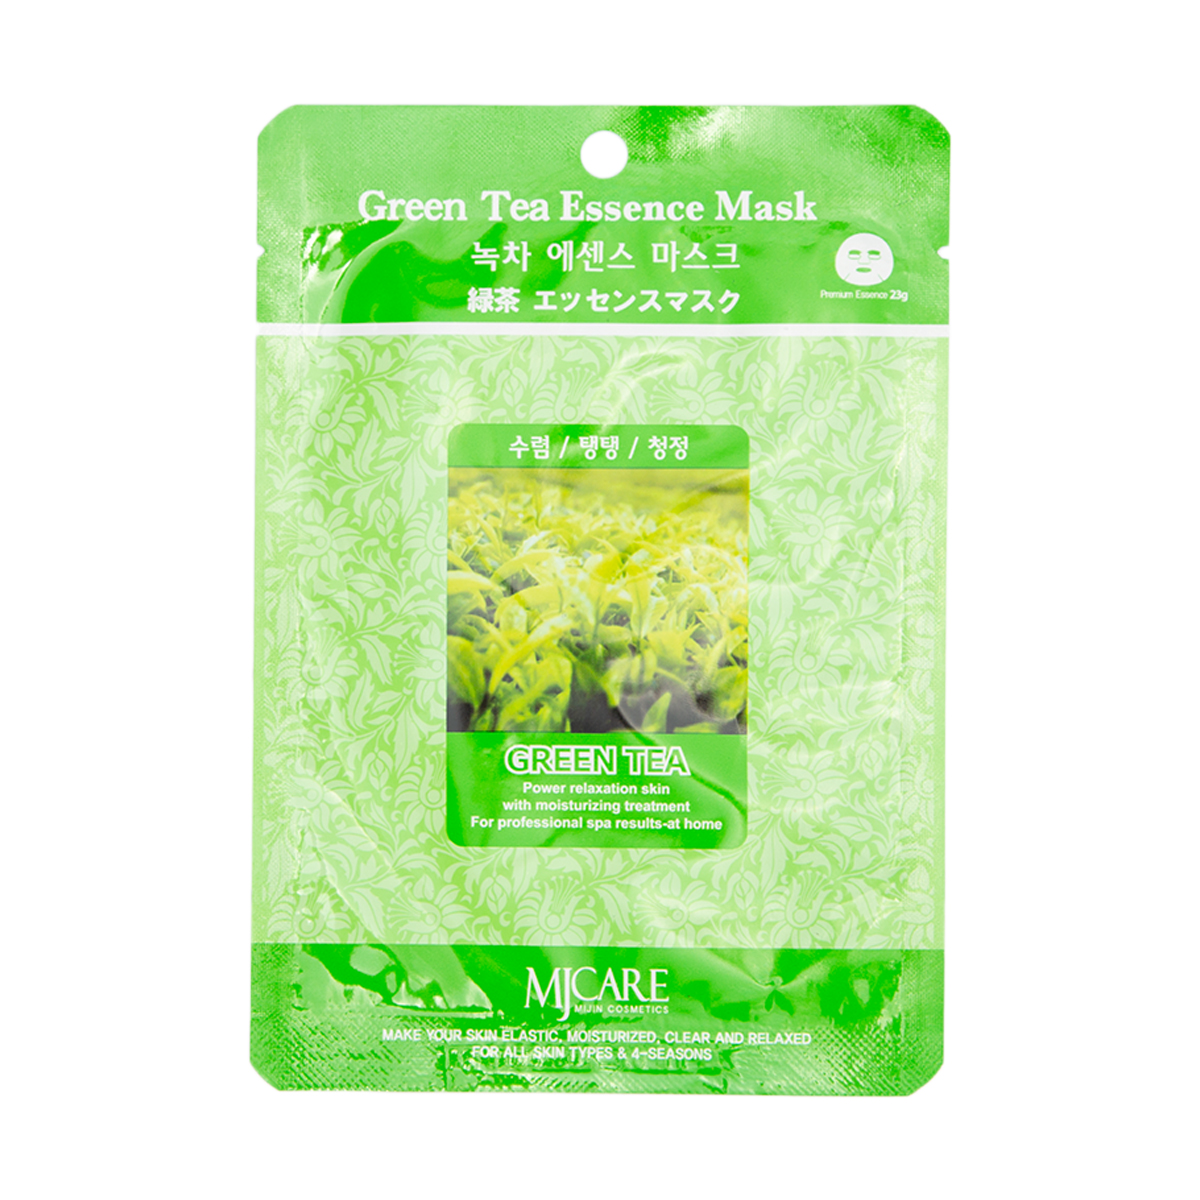 MJ Essence Маска тканевая зеленый чай Green Tea Essence Mask (23 г), Уход за лицом, Уход за кожей лица